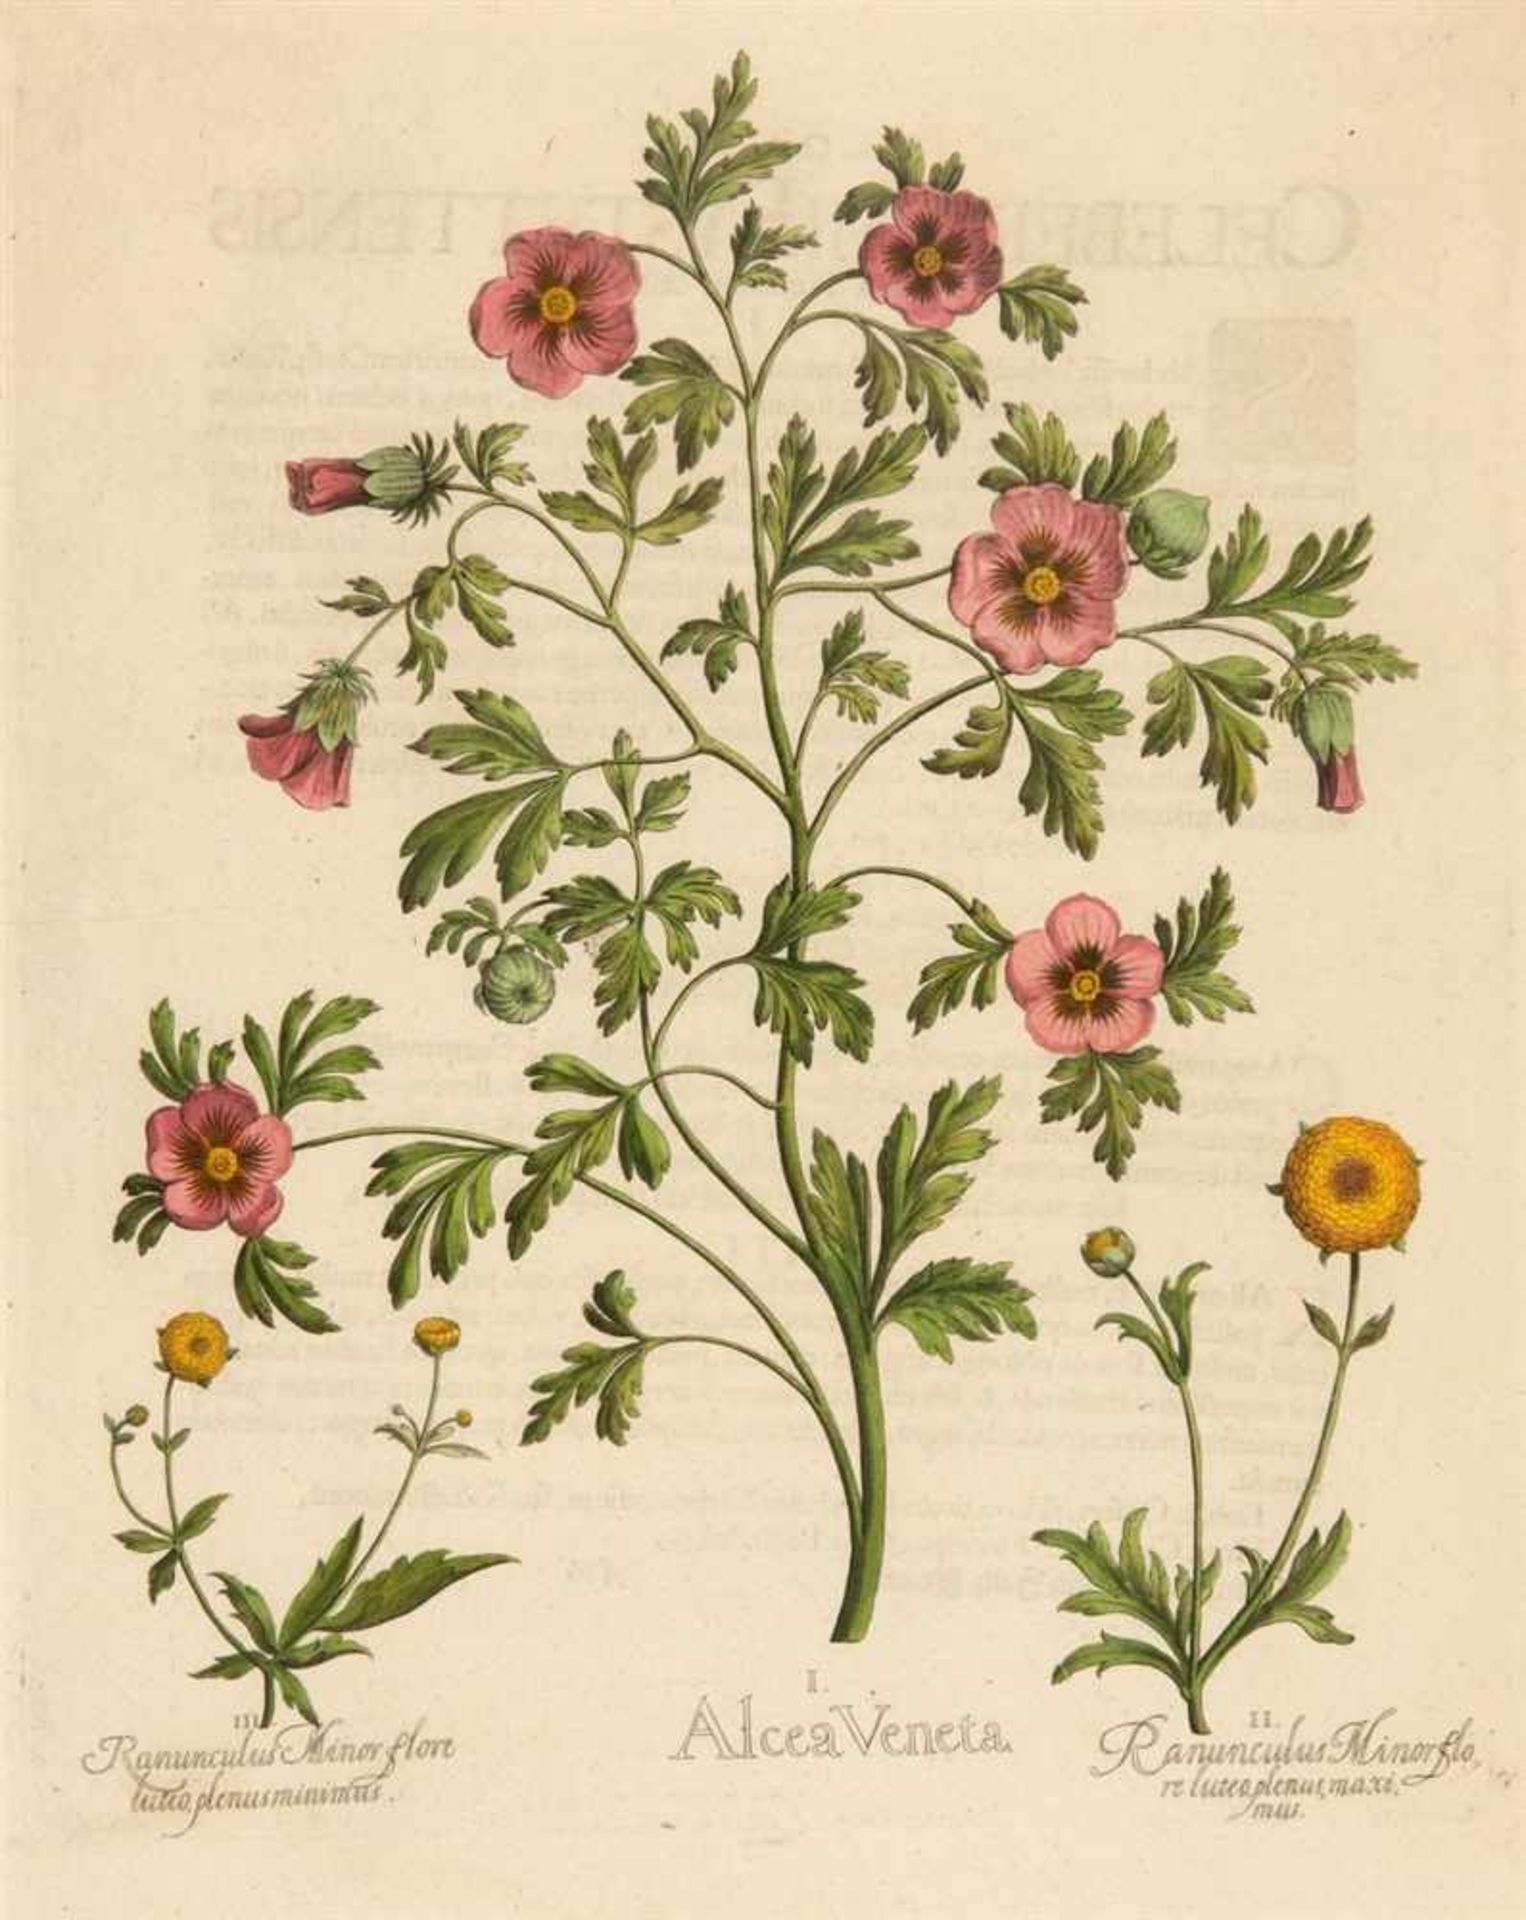 Hortus Eystettensis. I. Alcea Veneta / II. Ranunculus Minor flore luteo plenus maximus / III.